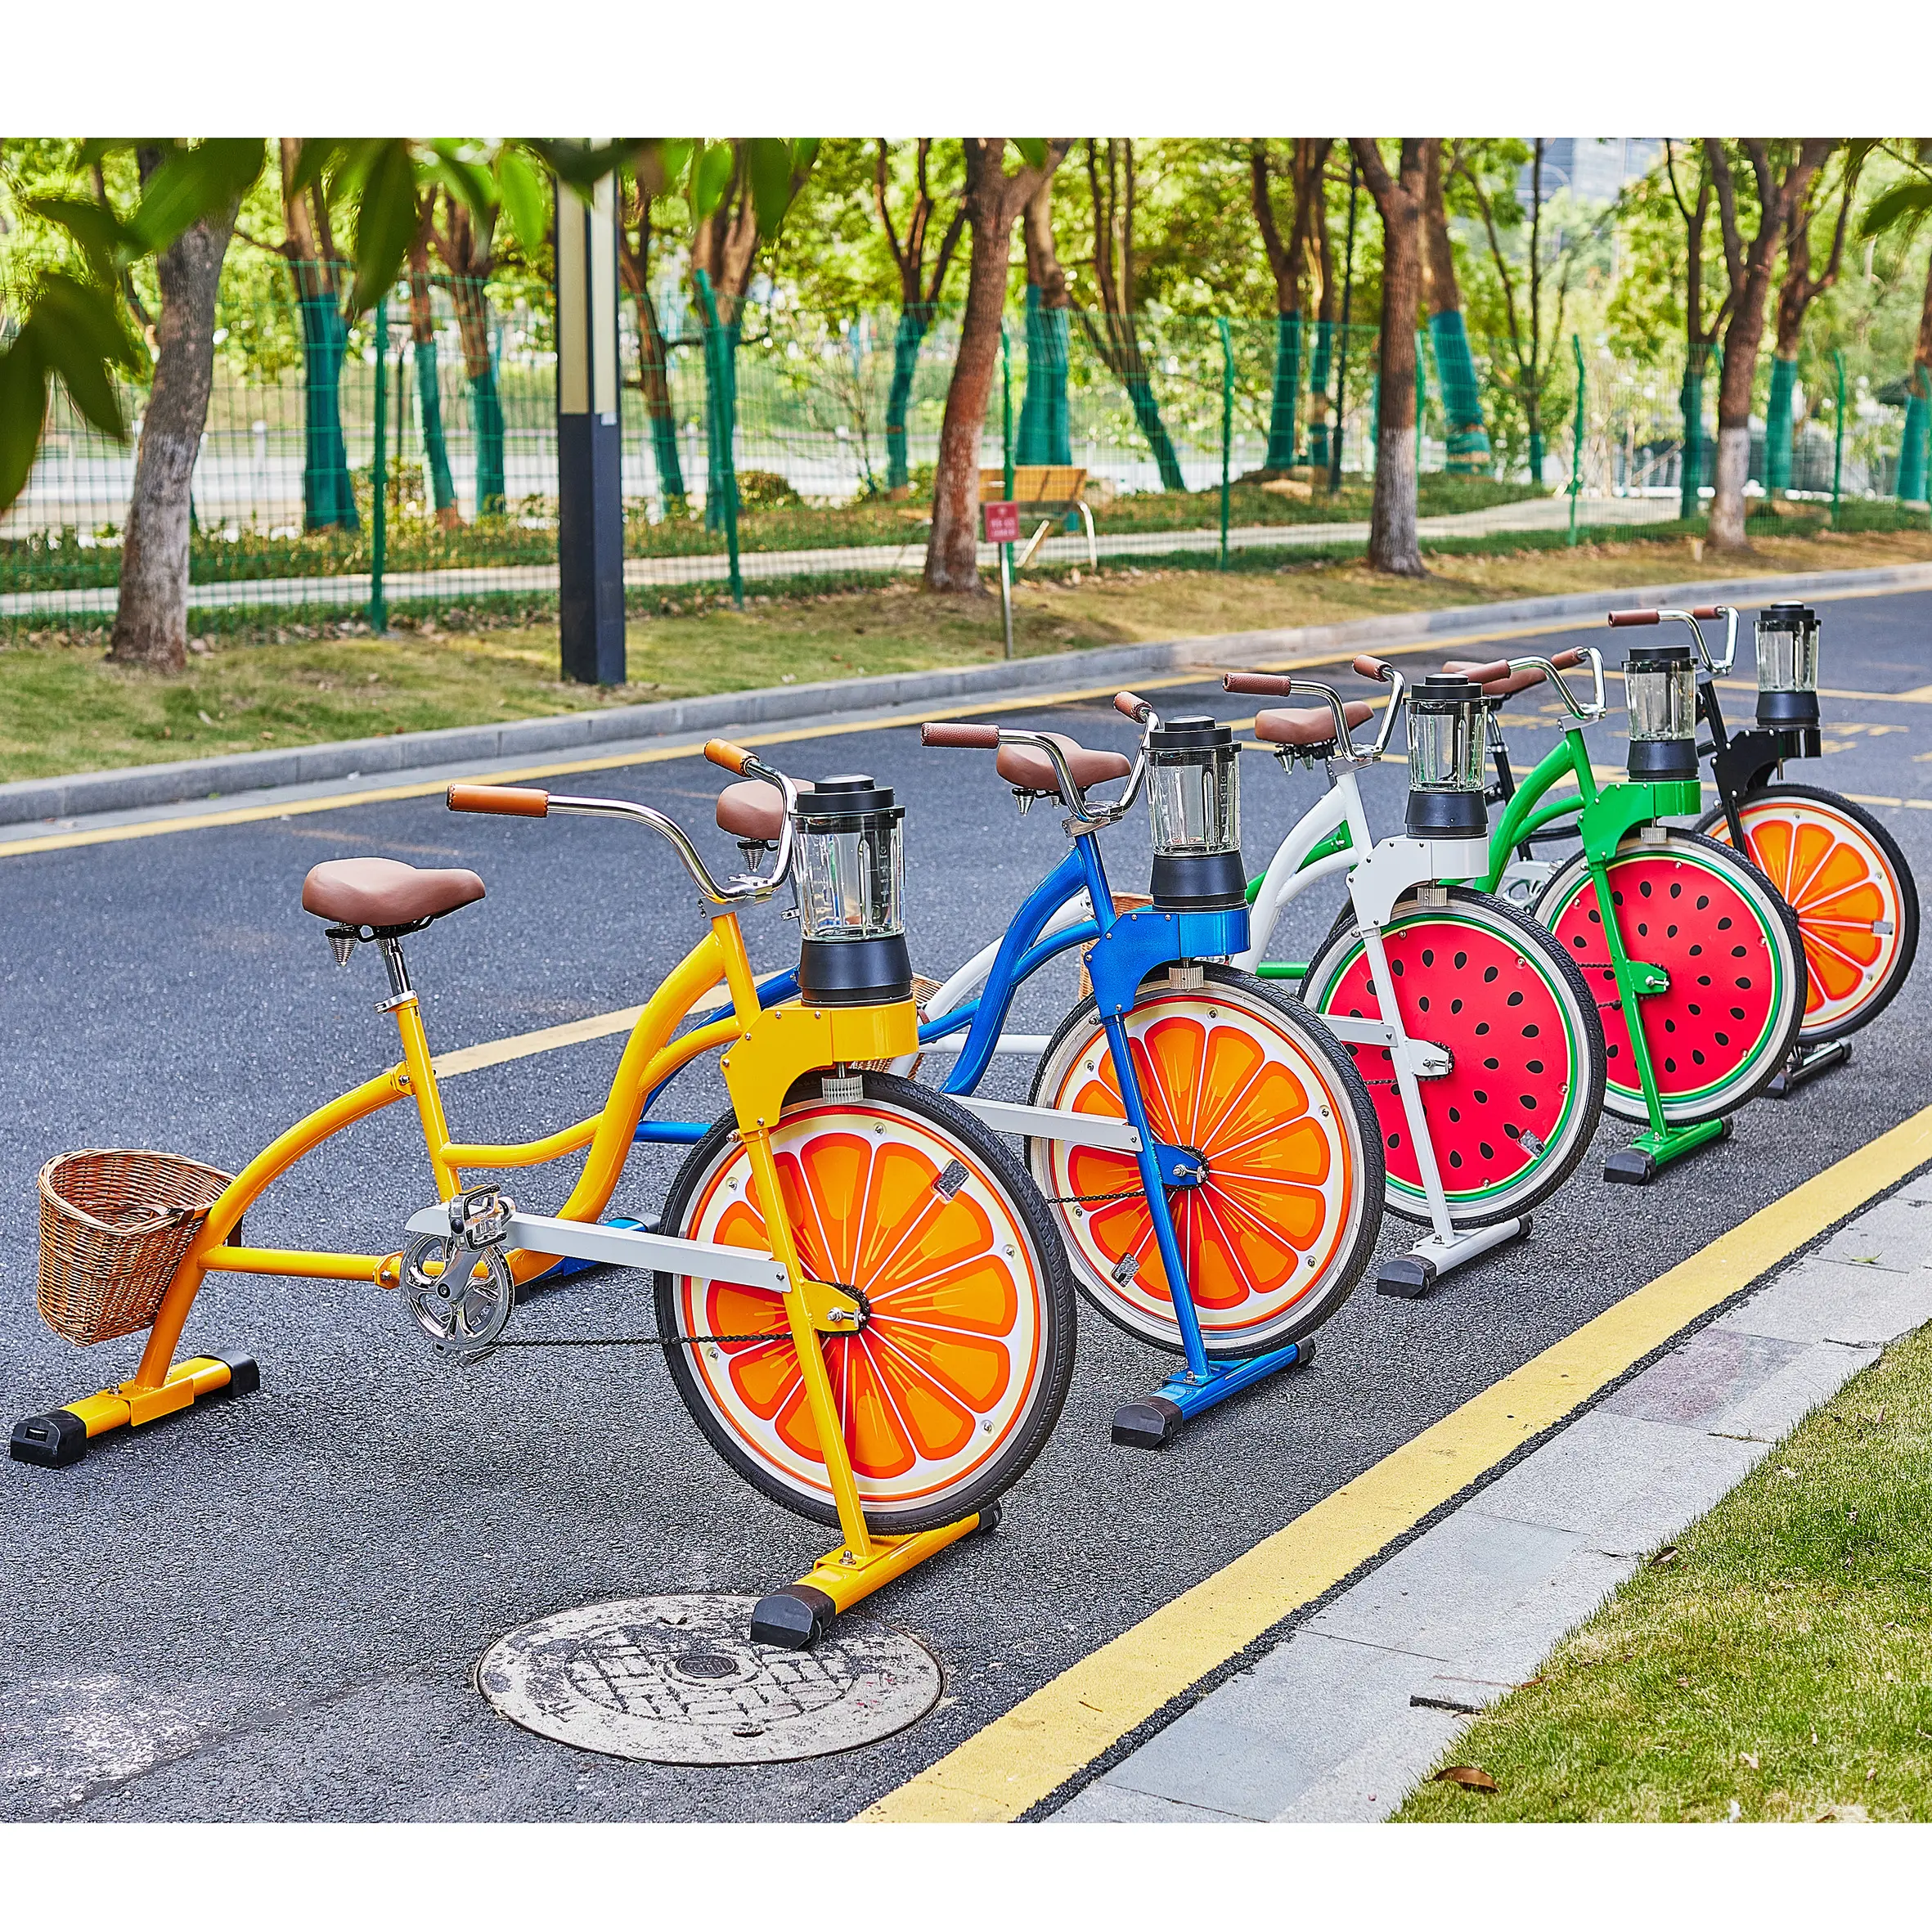 EXI Bicicleta extratora de suco de frutas, picadora de vegetais, bicicletas liquidificadoras para venda, bicicletas de praia laranja cruiser